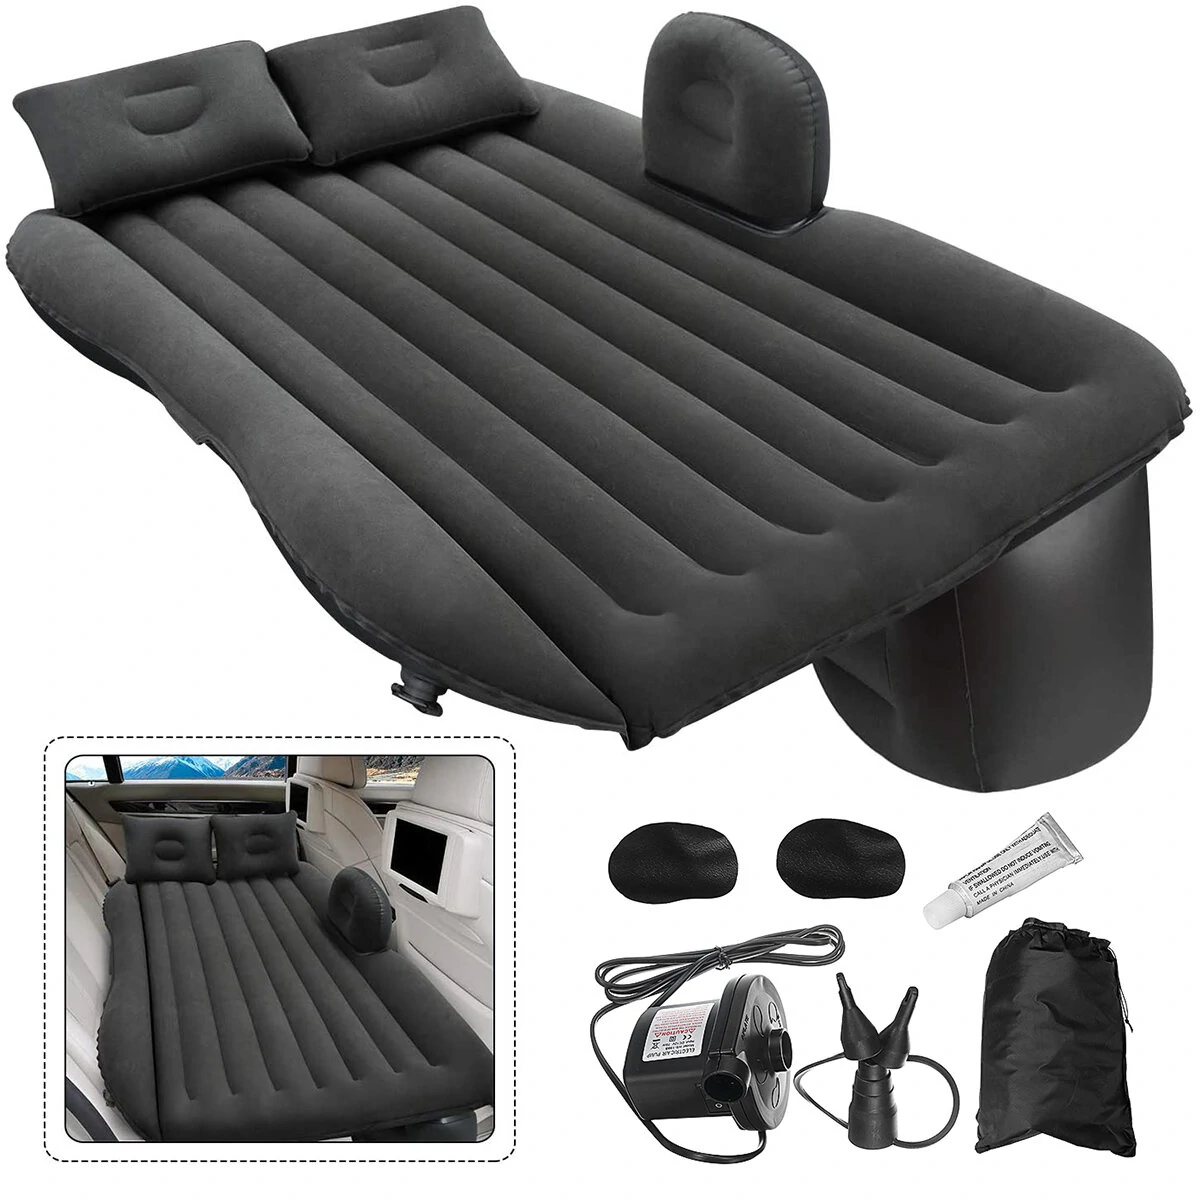 Το καλύτερο gadget για το αυτοκίνητο για outdoor καταστάσεις στα 48,79€ από αποθήκη Πολωνίας | Car Travel Air Bed Back Seat Air Inflatable Sofa Mattress Multifunctional Pillow Outdoor Camping Mat Cushion